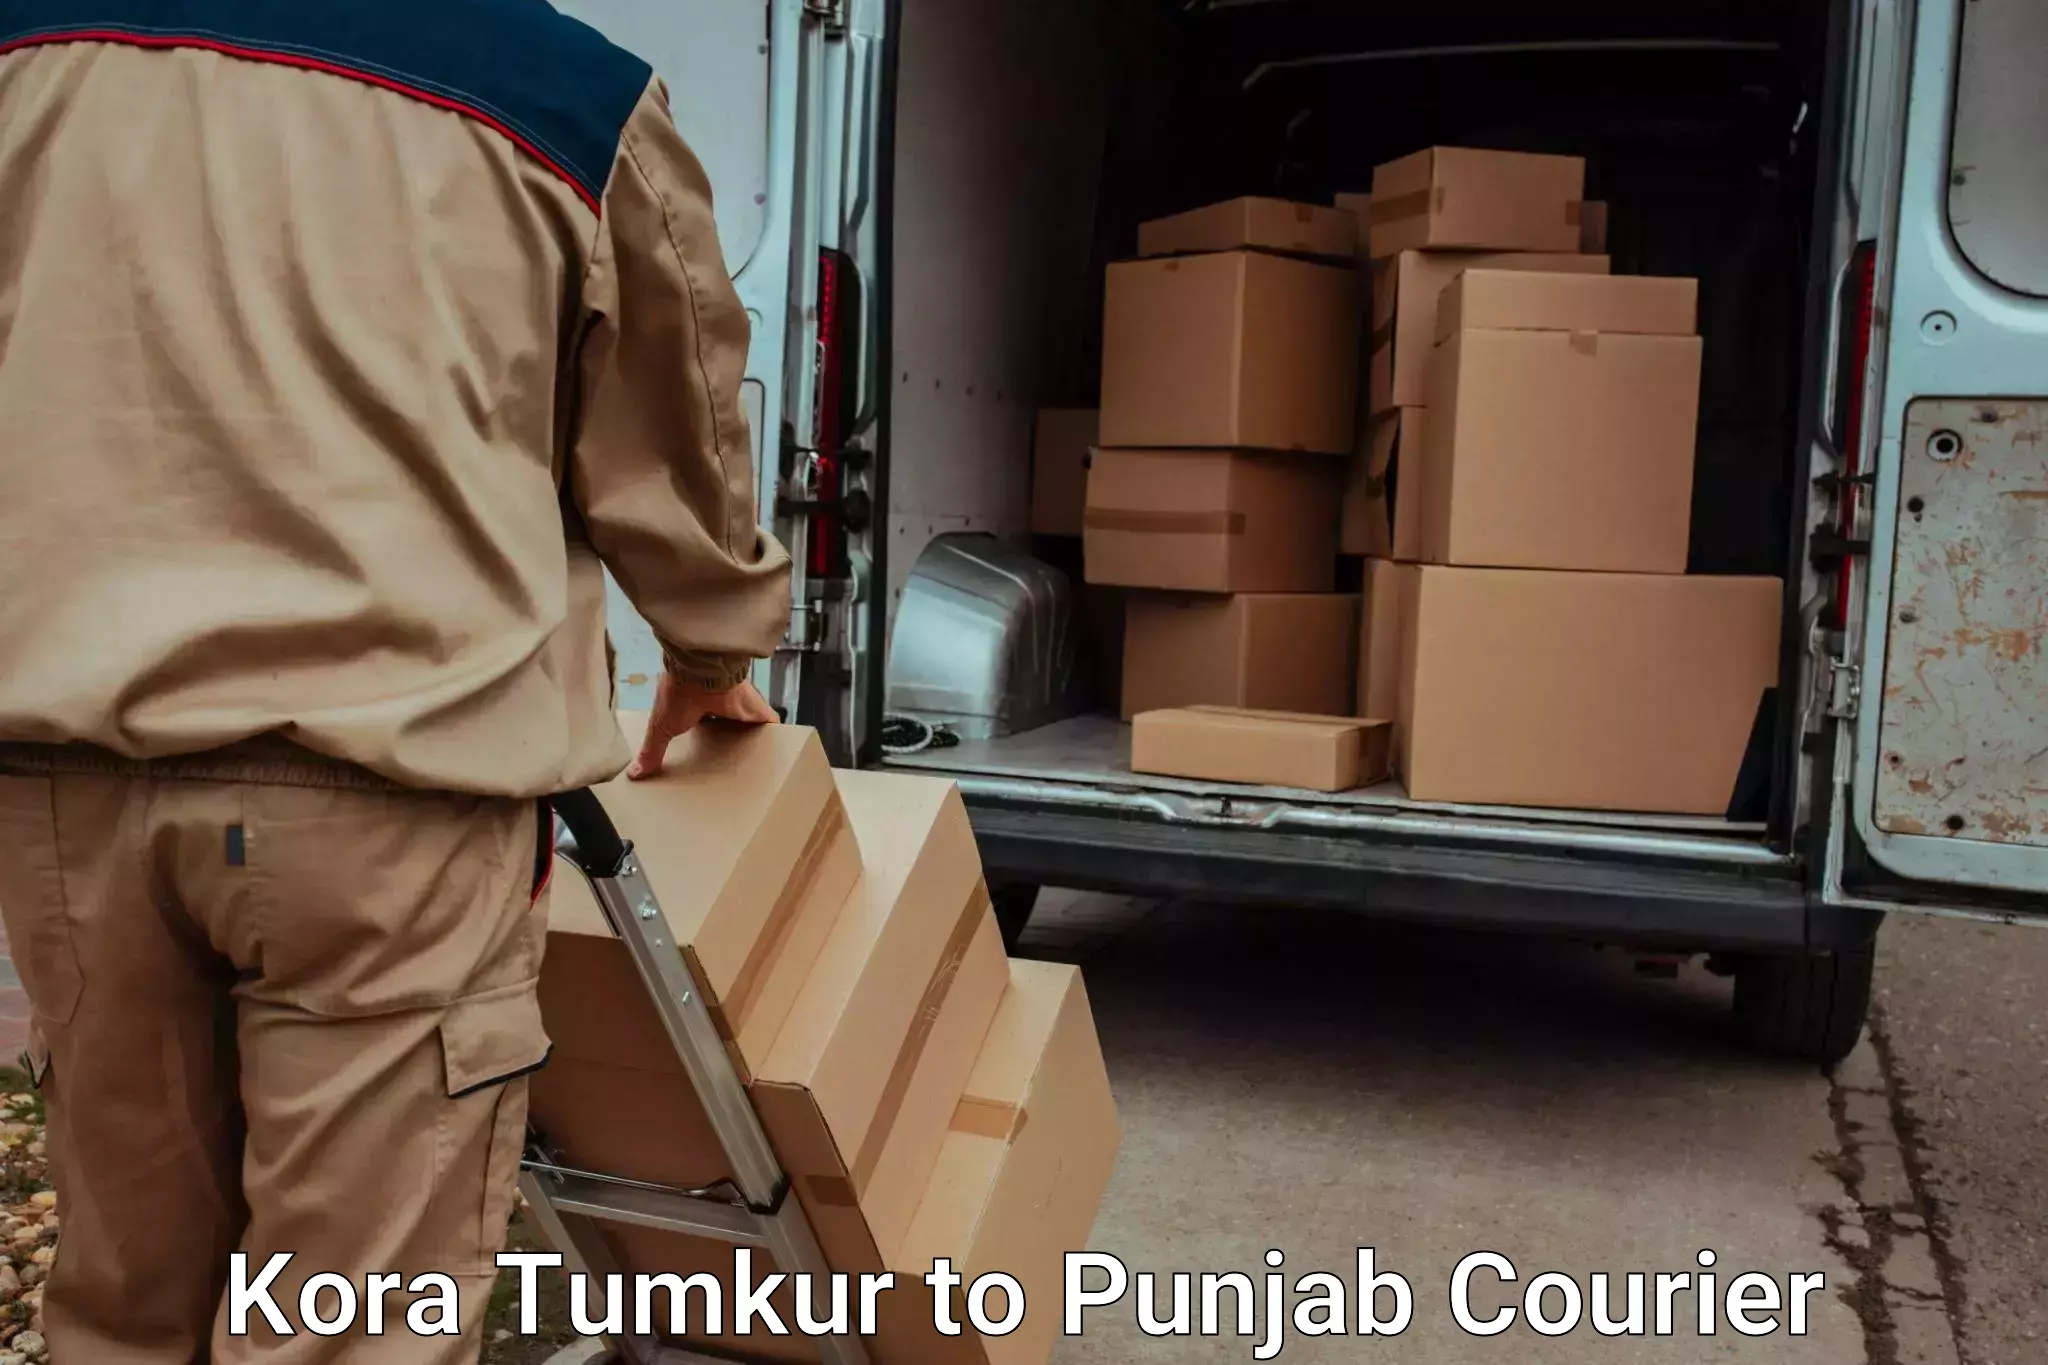 Personalized luggage shipping Kora Tumkur to Machhiwara